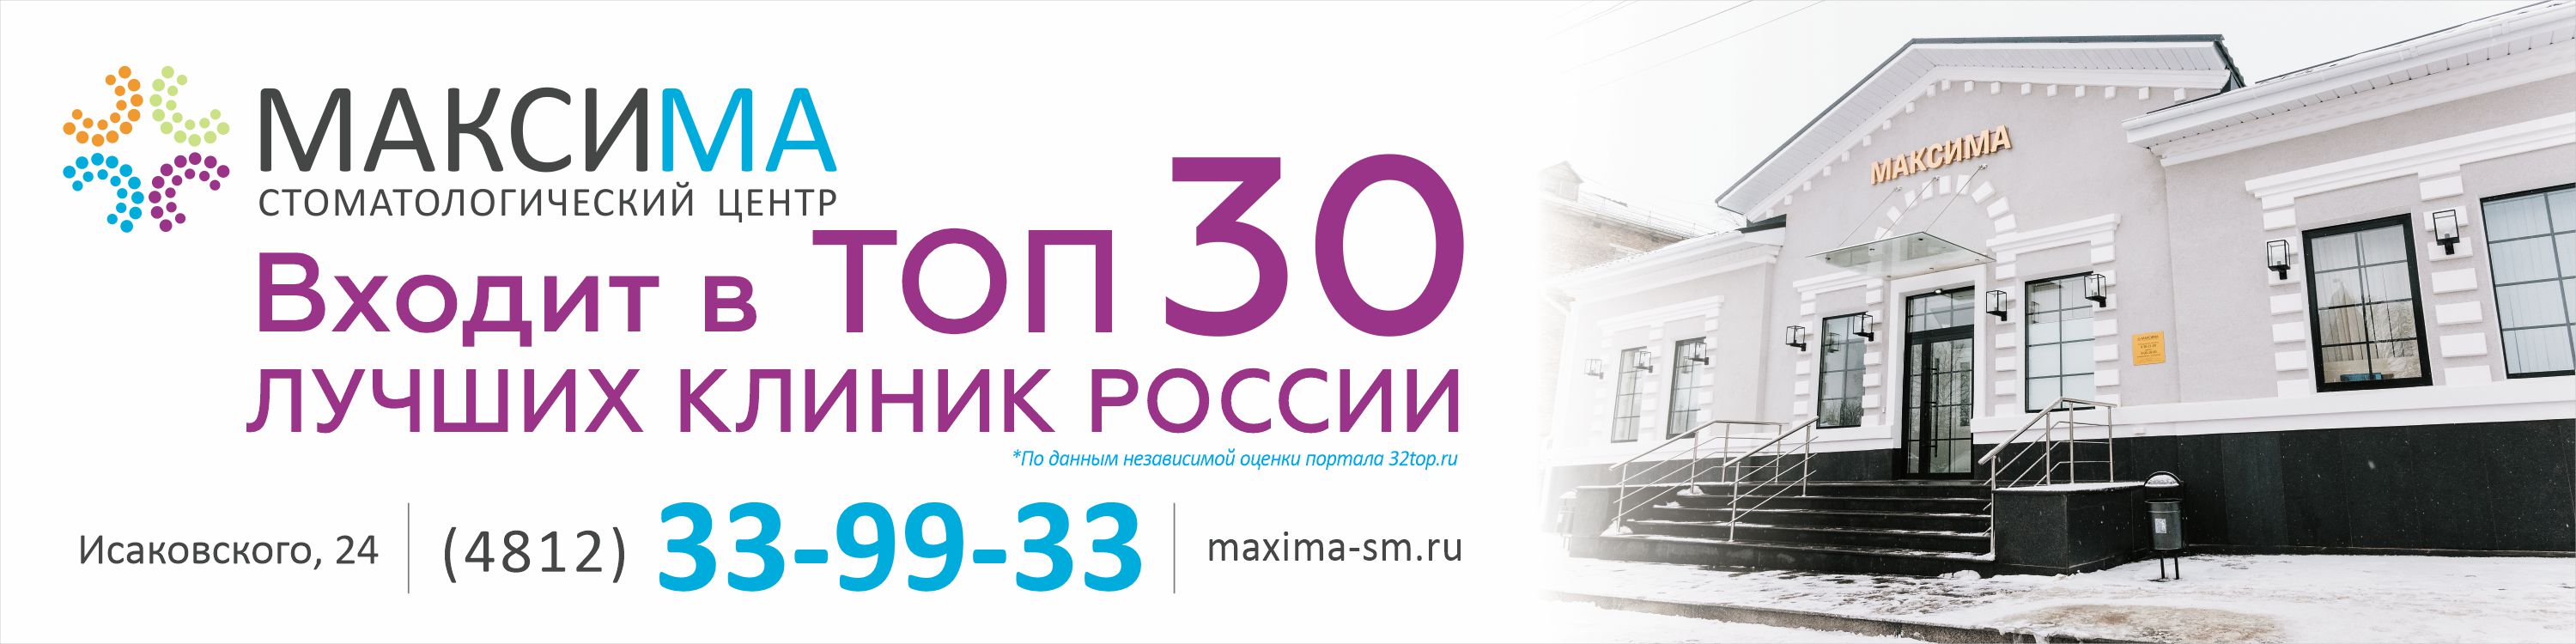 №30 в рейтинге лучших клиник России